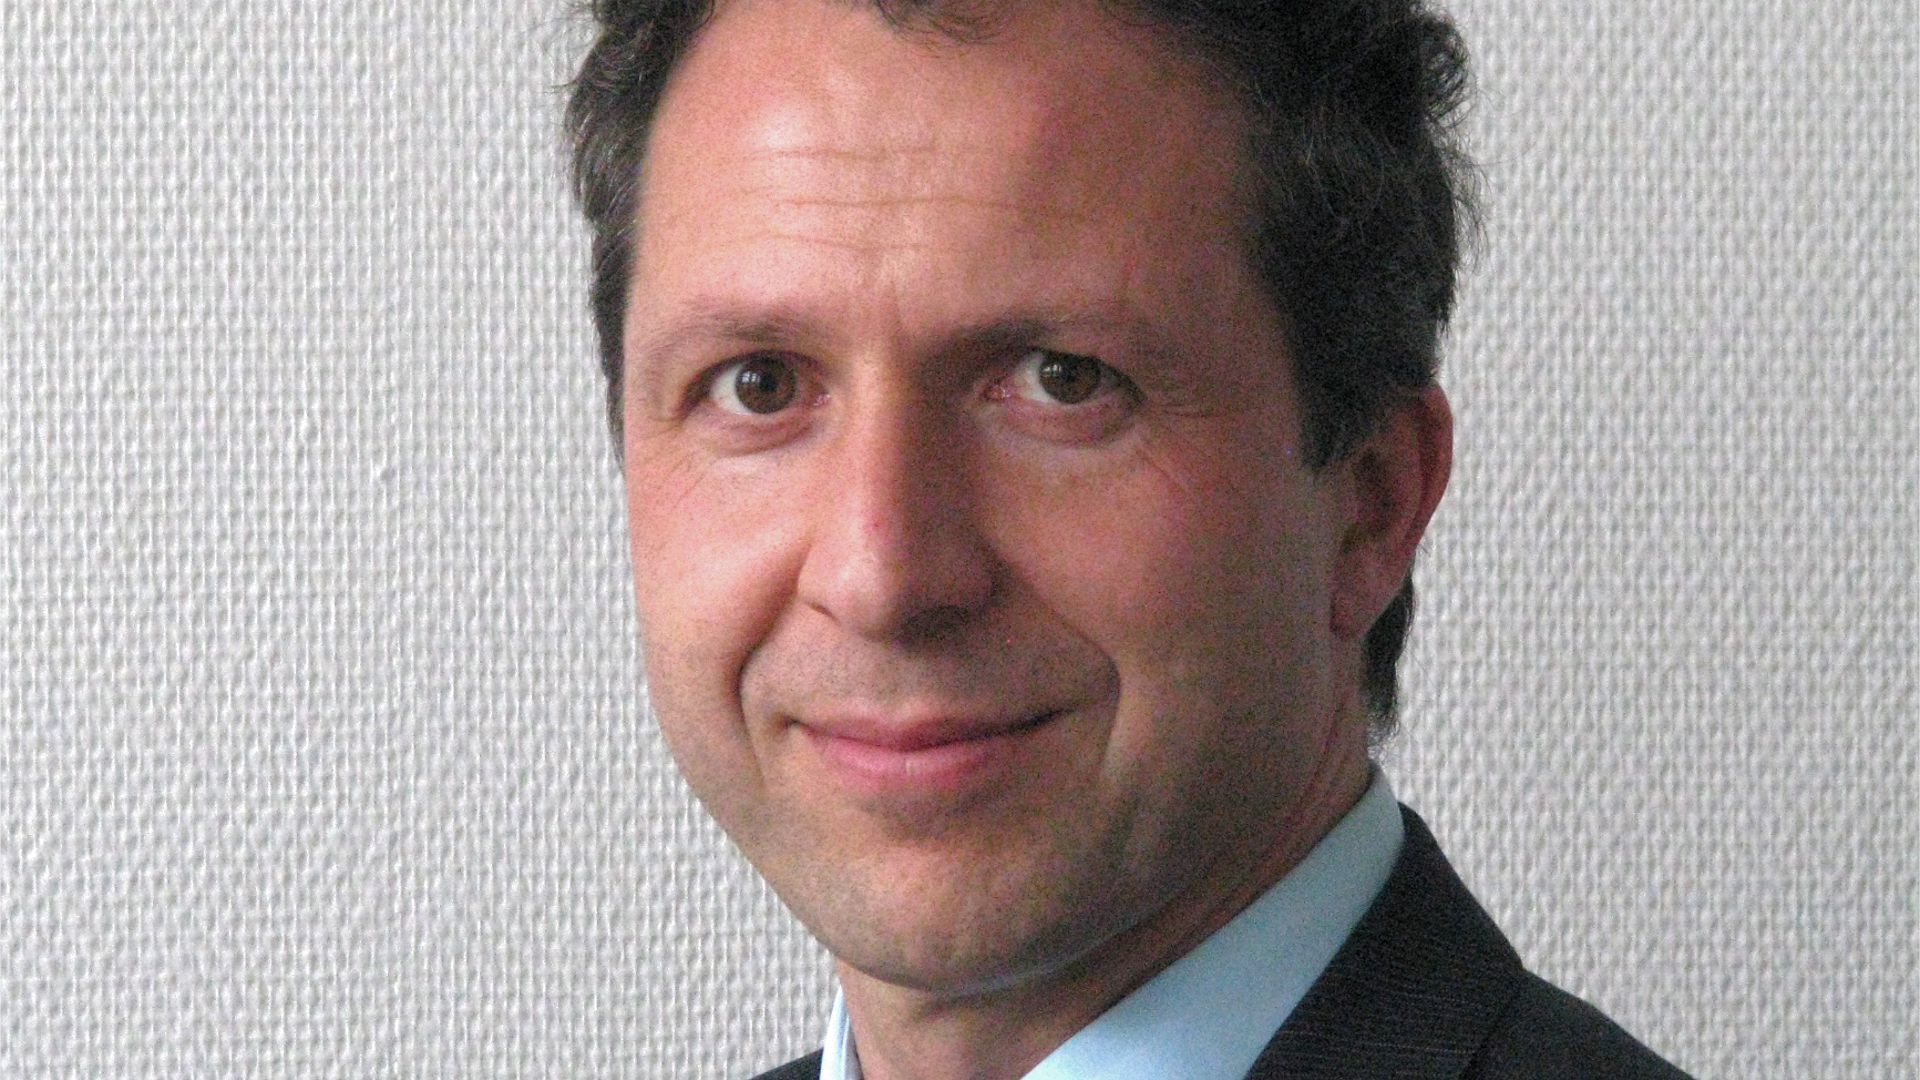 Roland Kaiser bewirbt sich als Zweiter Beigeordneter in Baden-Baden

16.09.2017